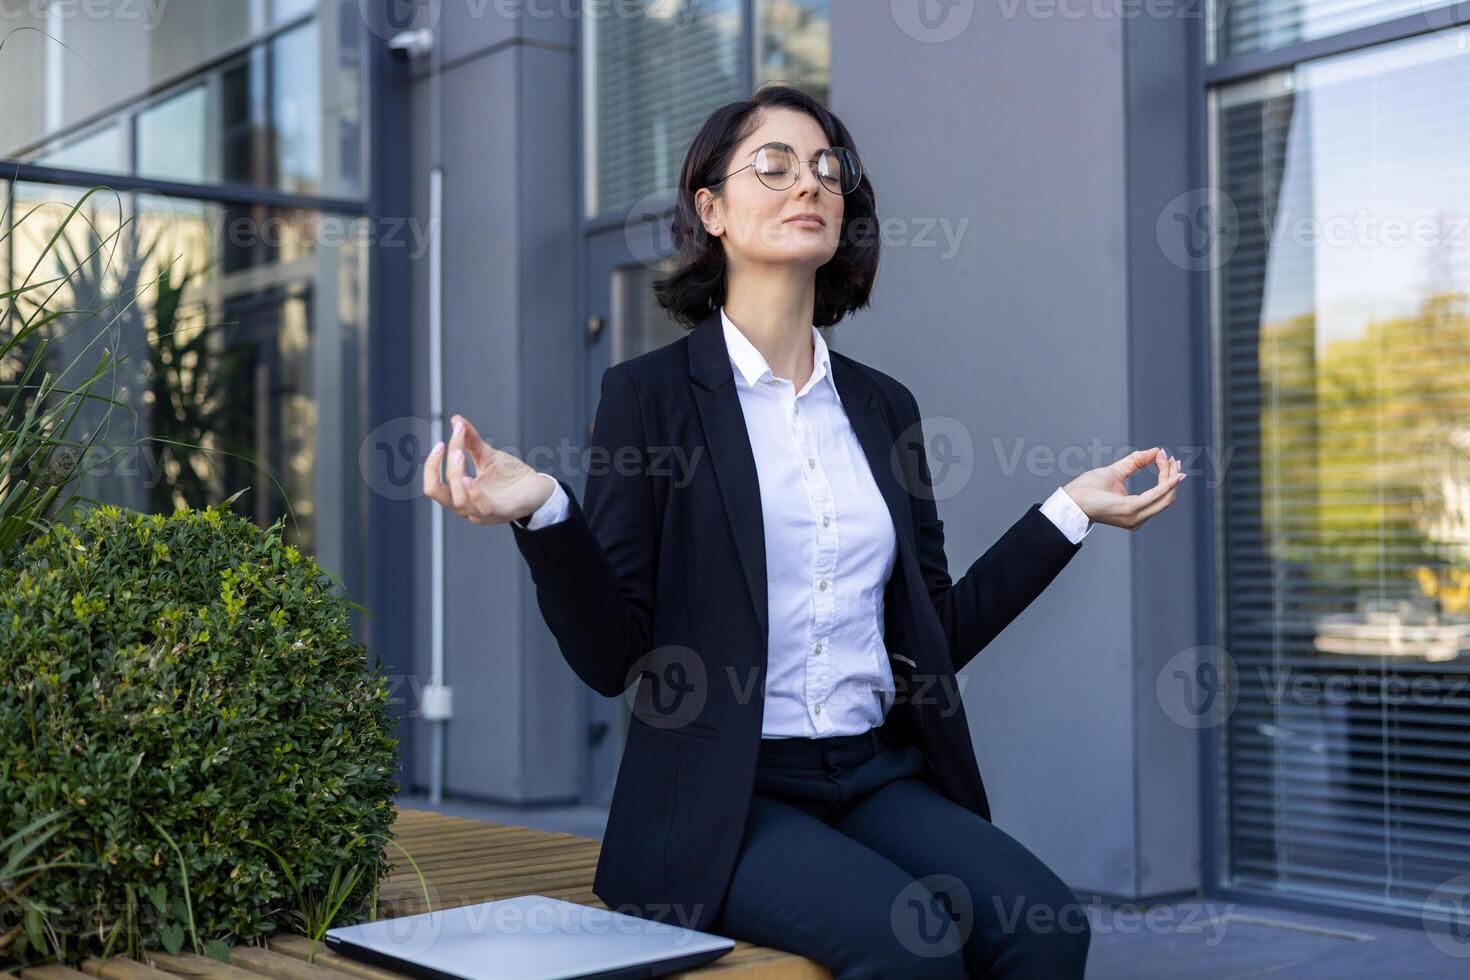 un profesional mujer de negocios en un traje medita pacíficamente al aire libre, creando un tranquilo oficina escapar, equilibrio productividad y bienestar. foto